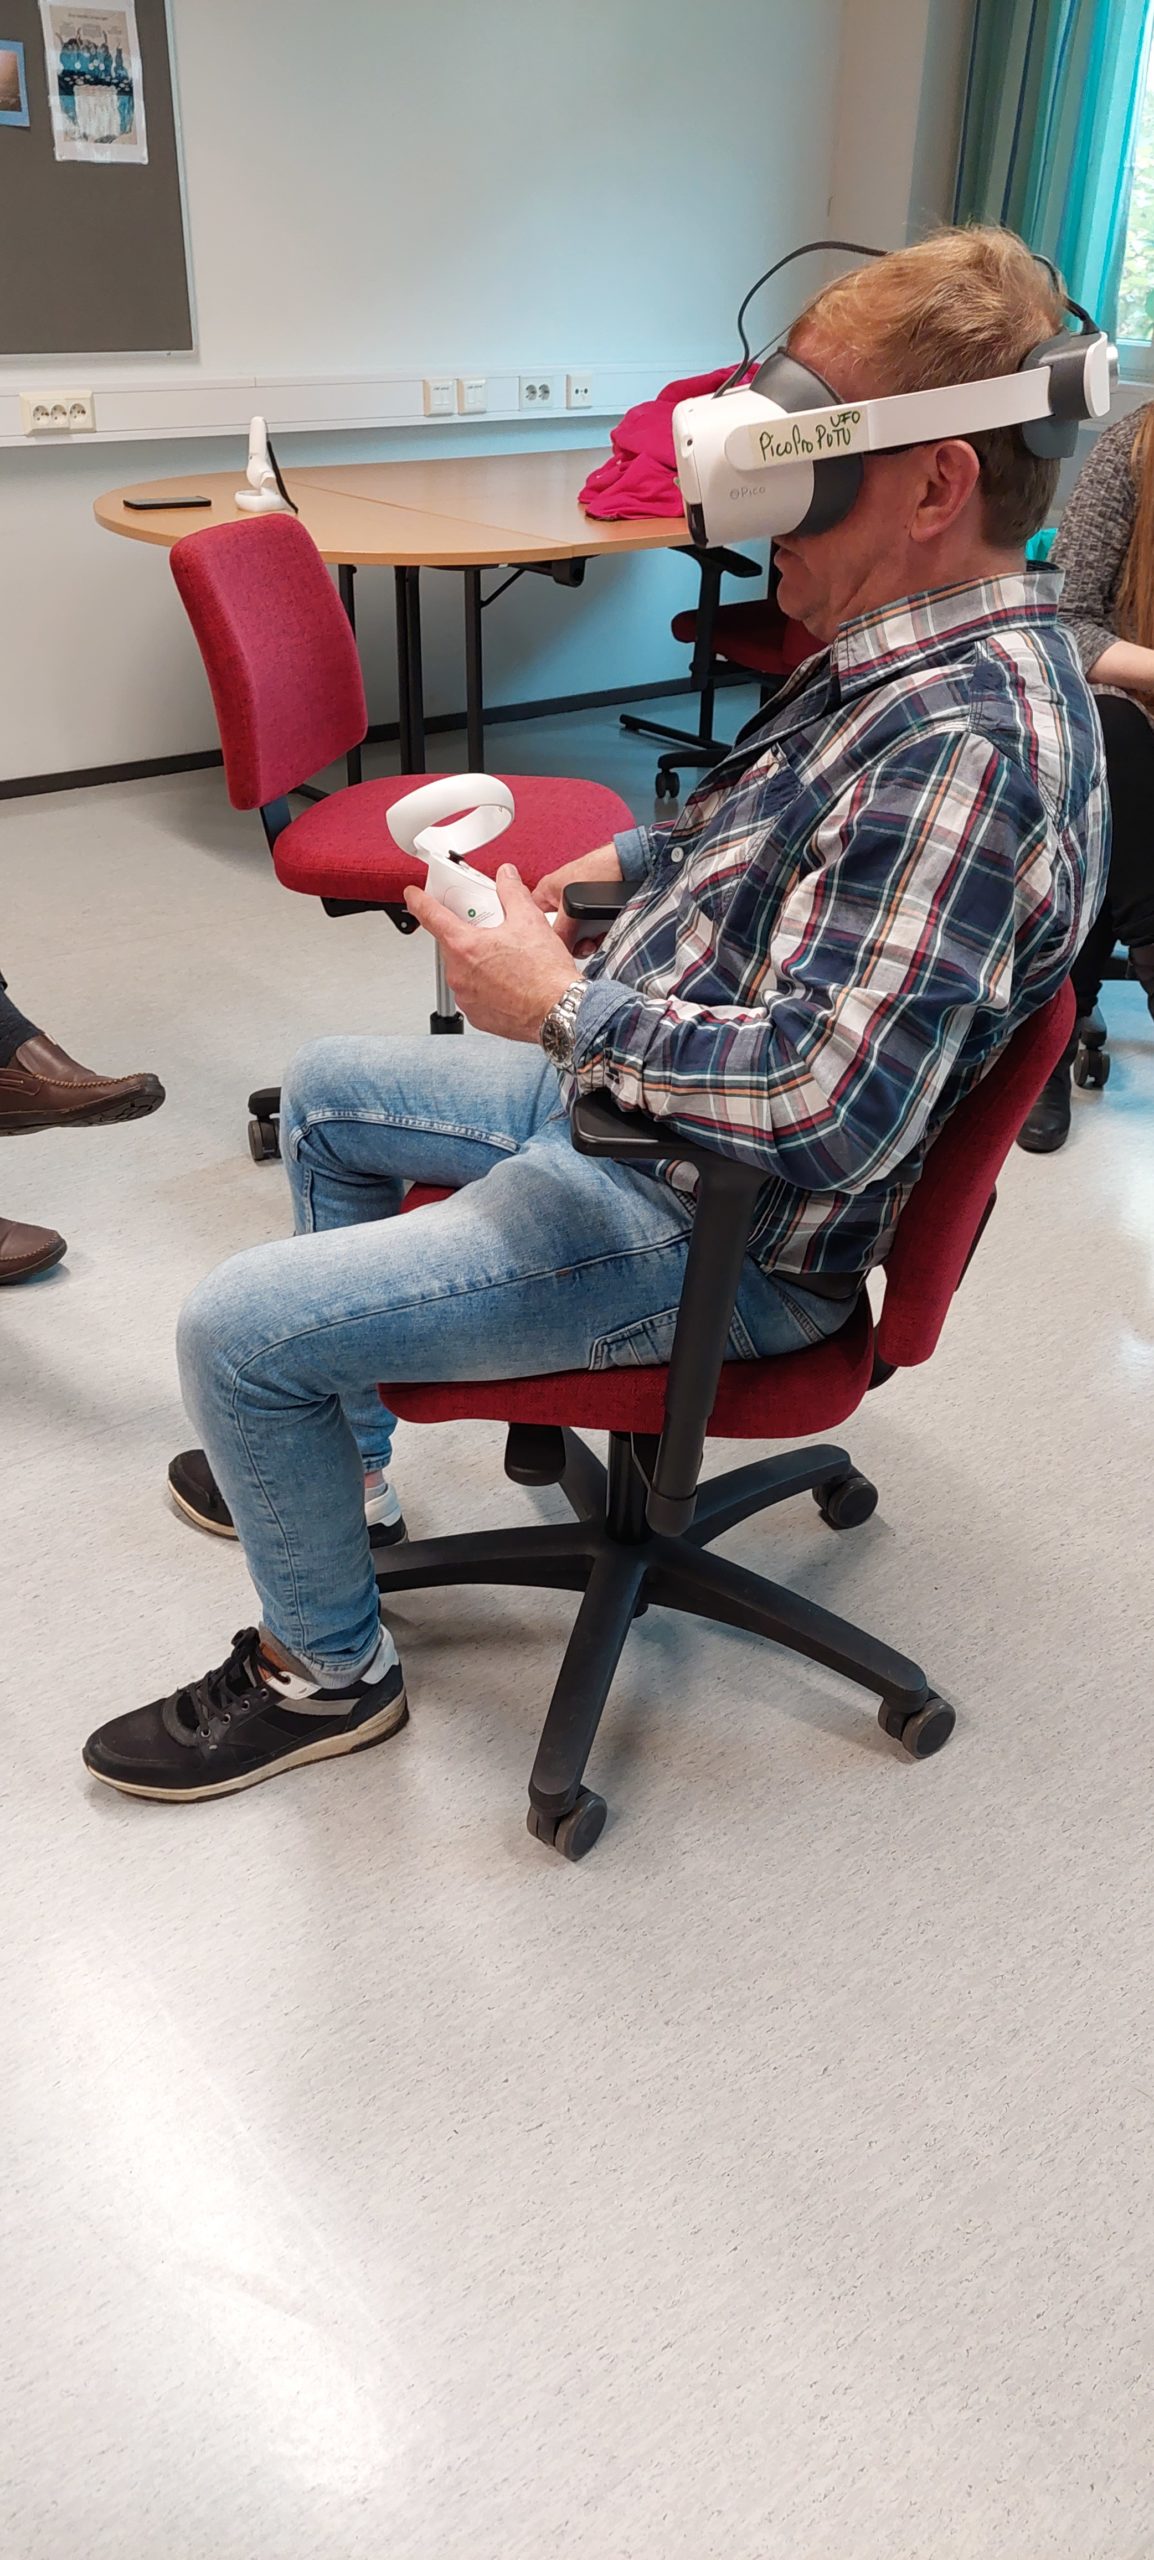 Henkilö istuu pyörivällä tuolilla ja hänellä on päässään VR-lasit.